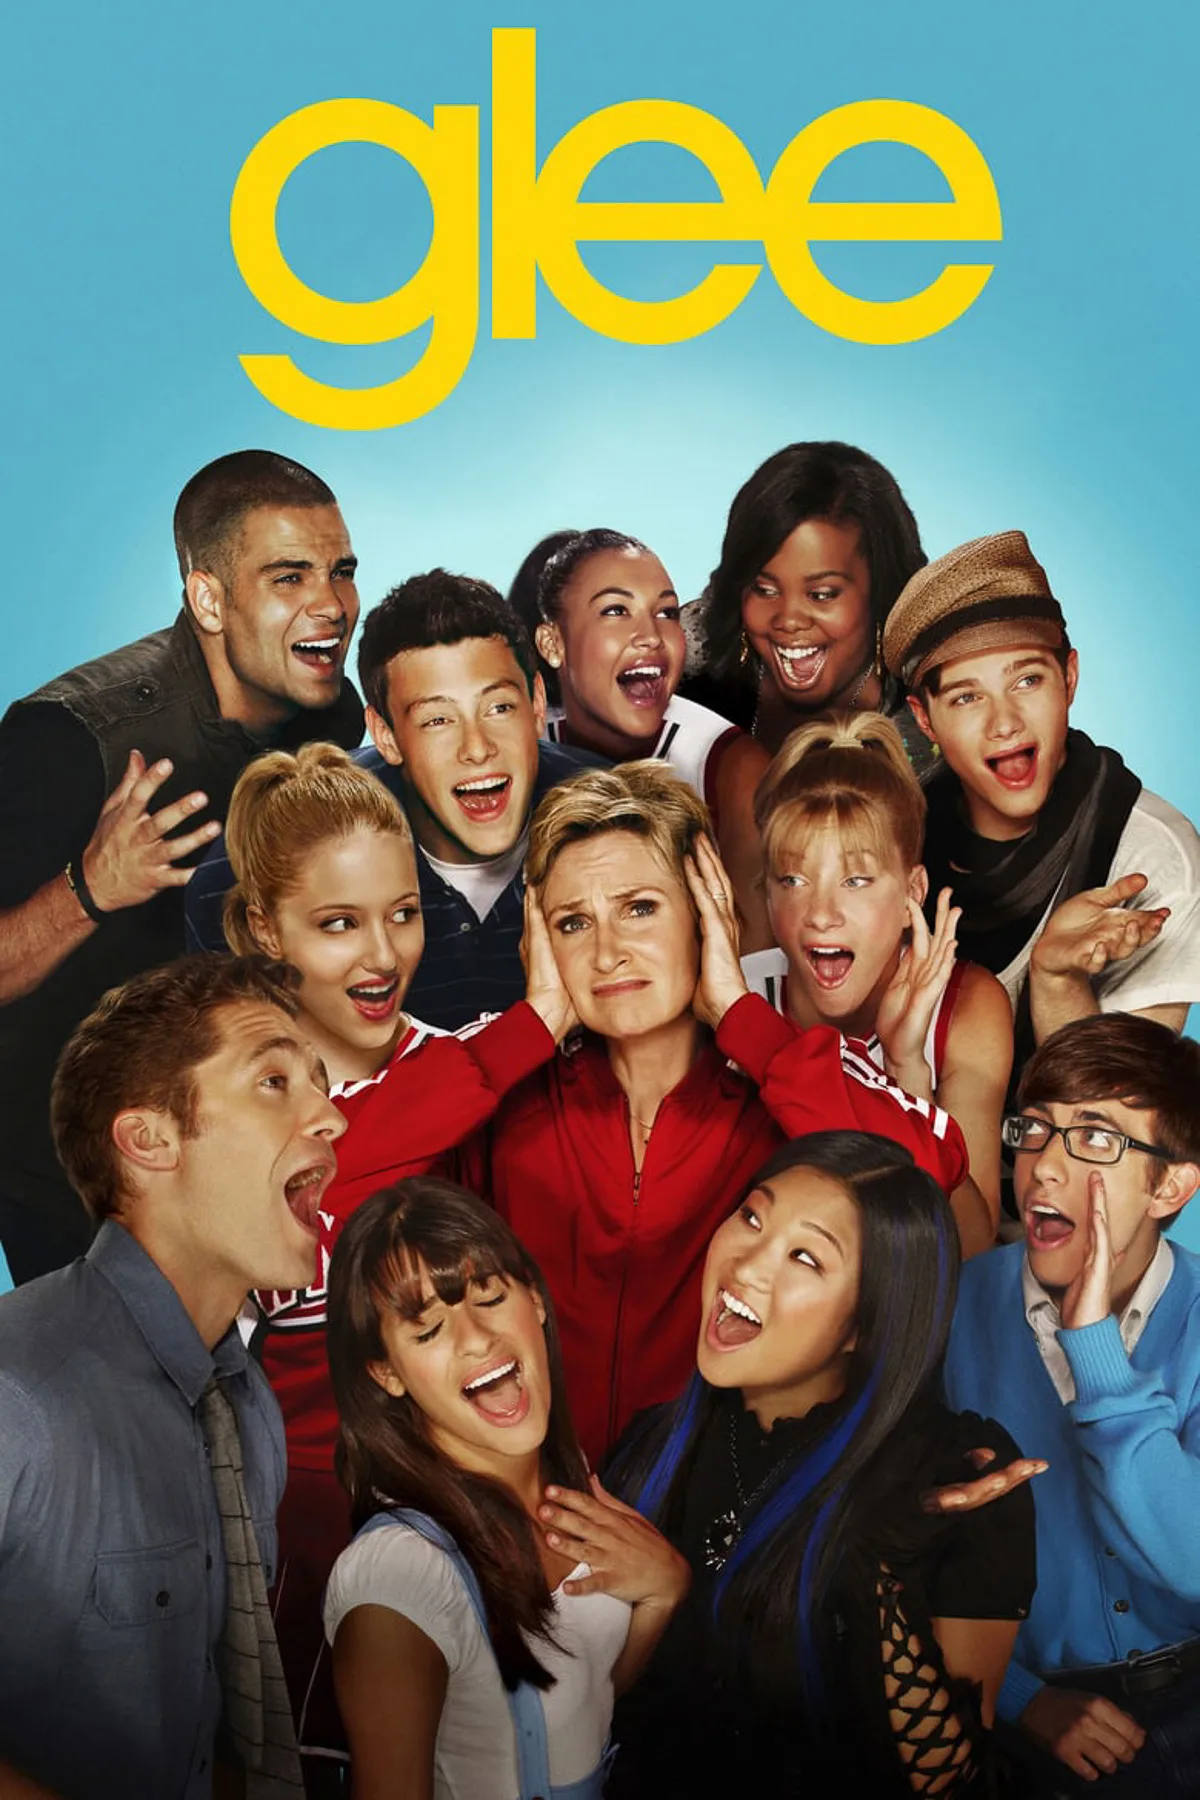 Glee 2009-2015